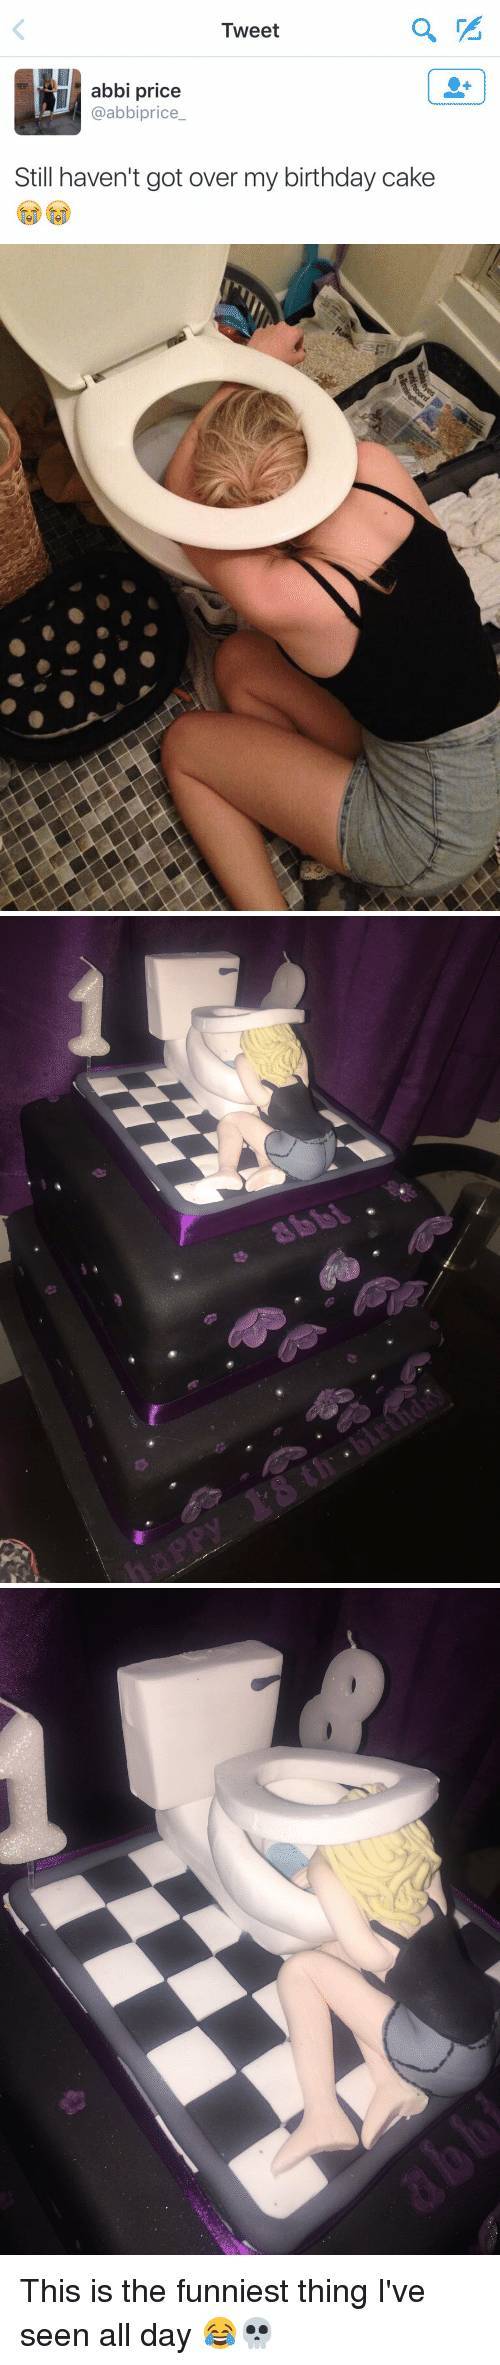 딸 생일을 위해 주문한 케이크